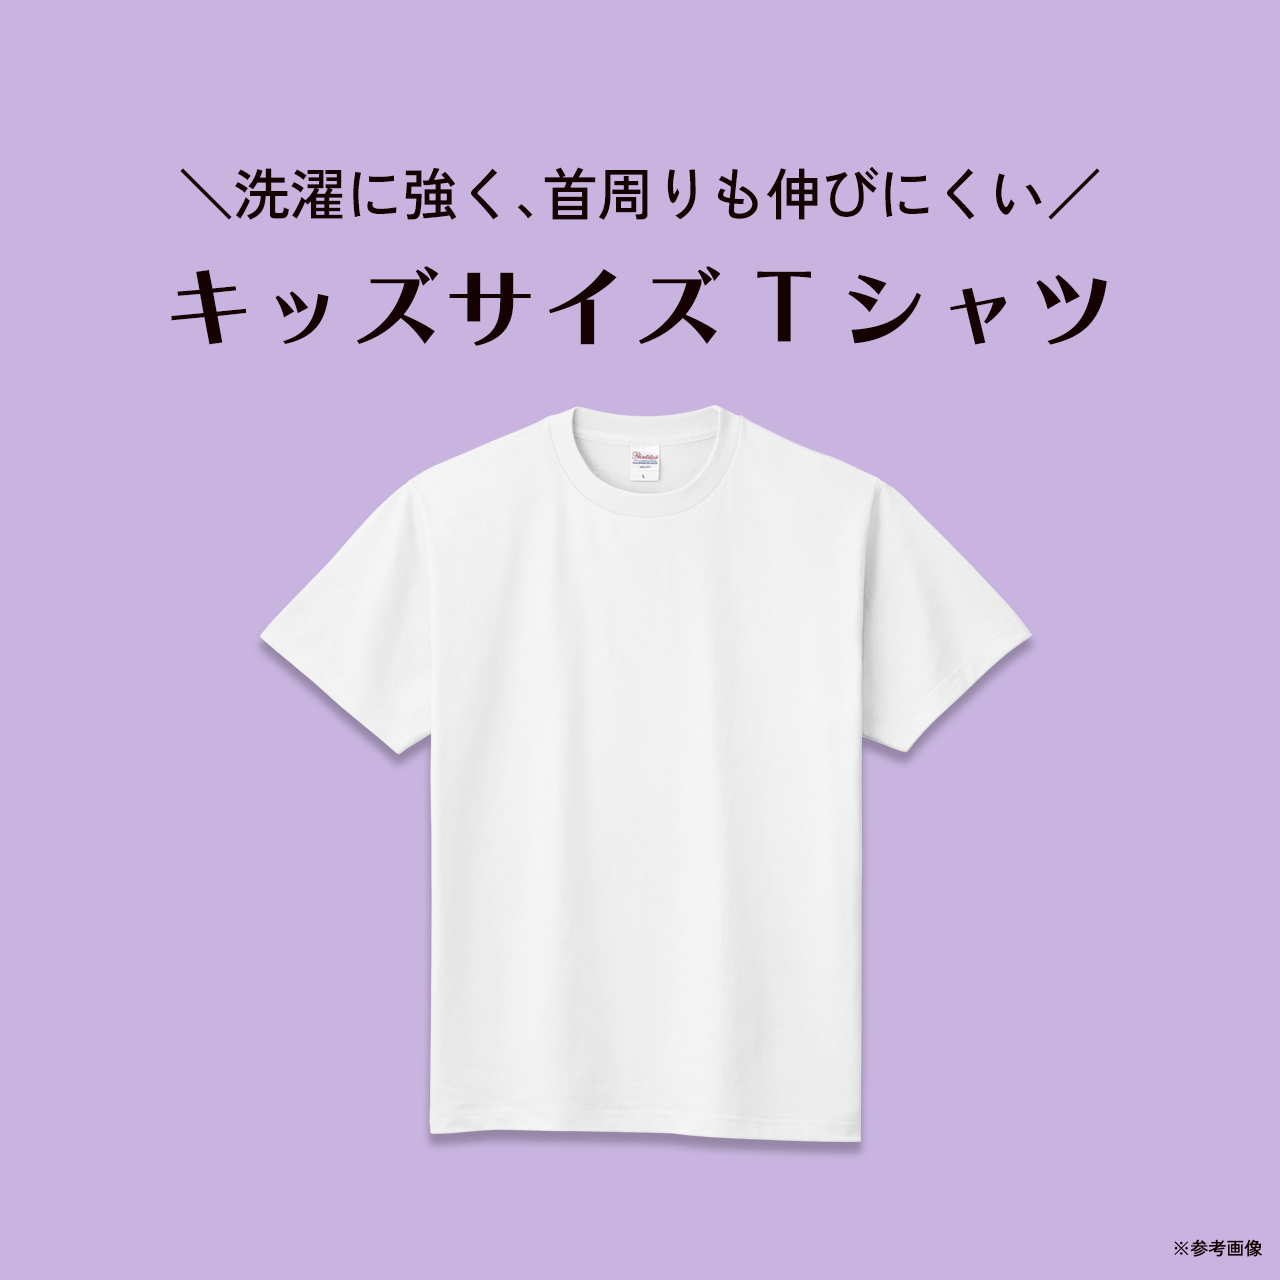 ★キャンペーン★キッズTシャツ送料無料♪